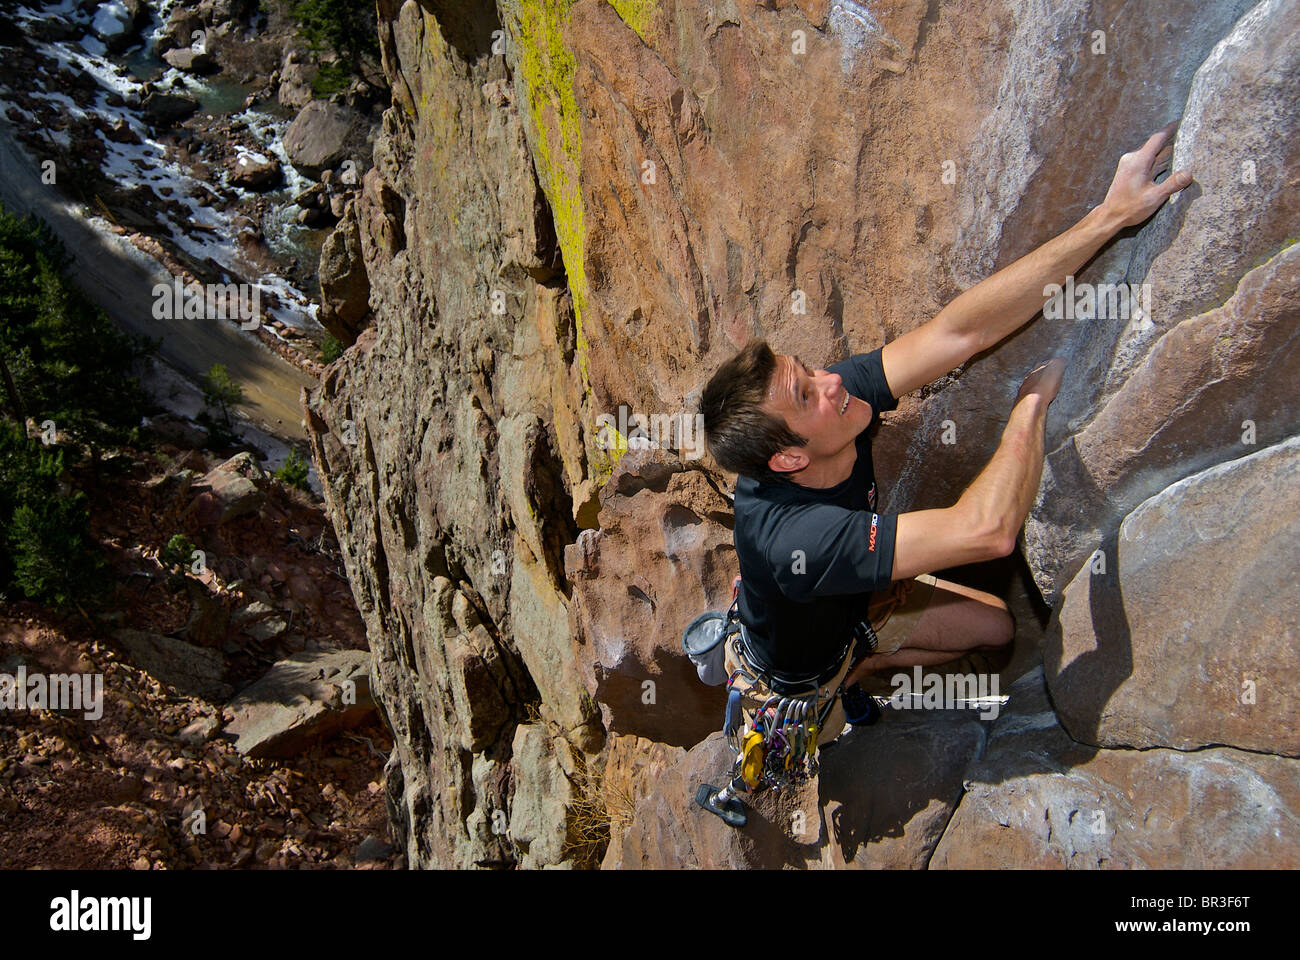 An amputee climber on a rock face in Eldorado Canyon, Colorado. Stock Photo